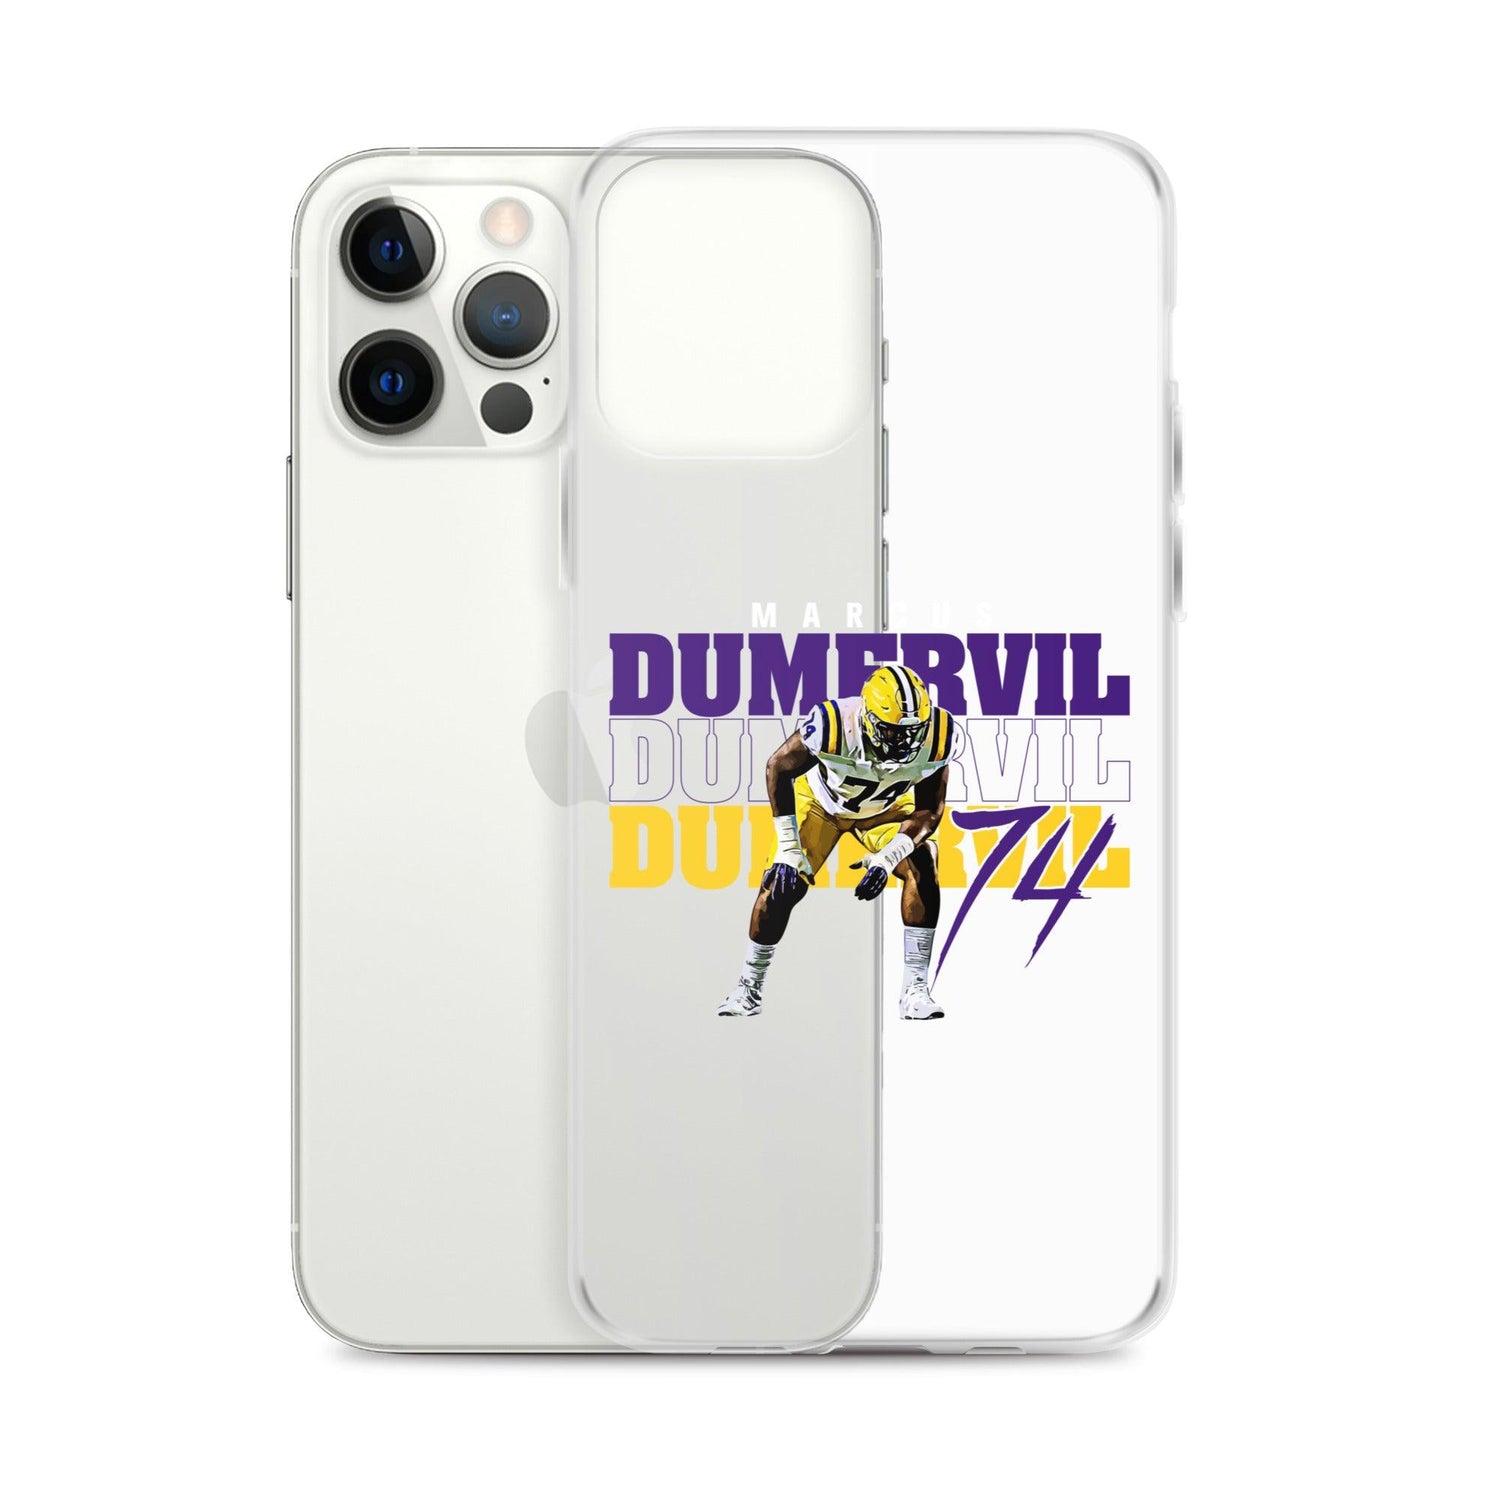 Marcus Dumervil "74" iPhone Case - Fan Arch